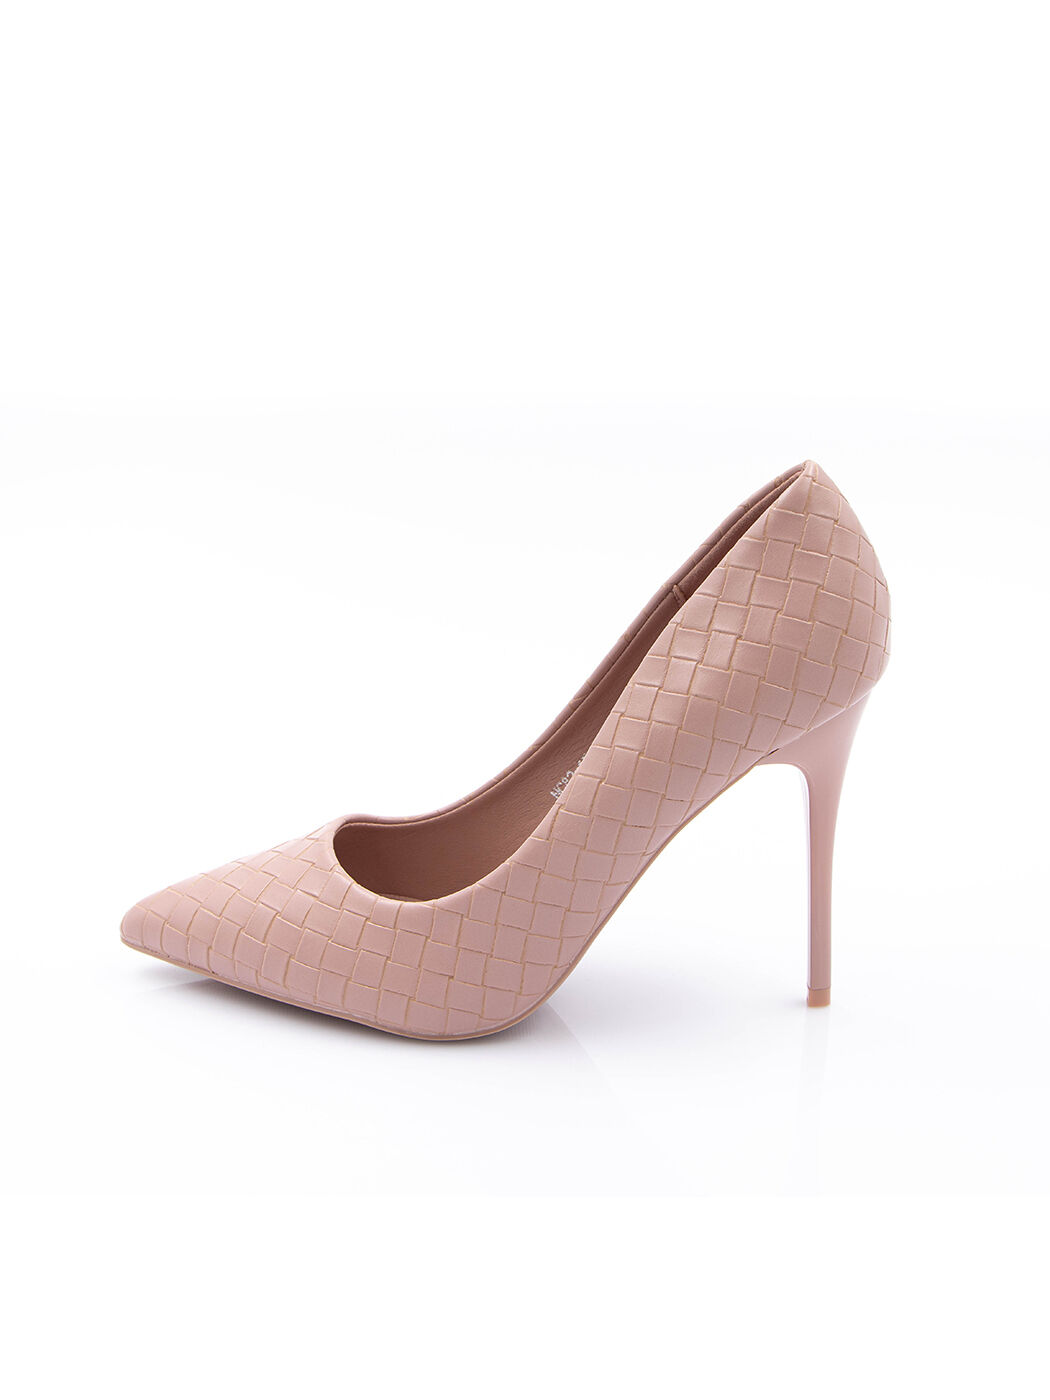 Туфли женские розовые экокожа каблук шпилька демисезон от производителя EM